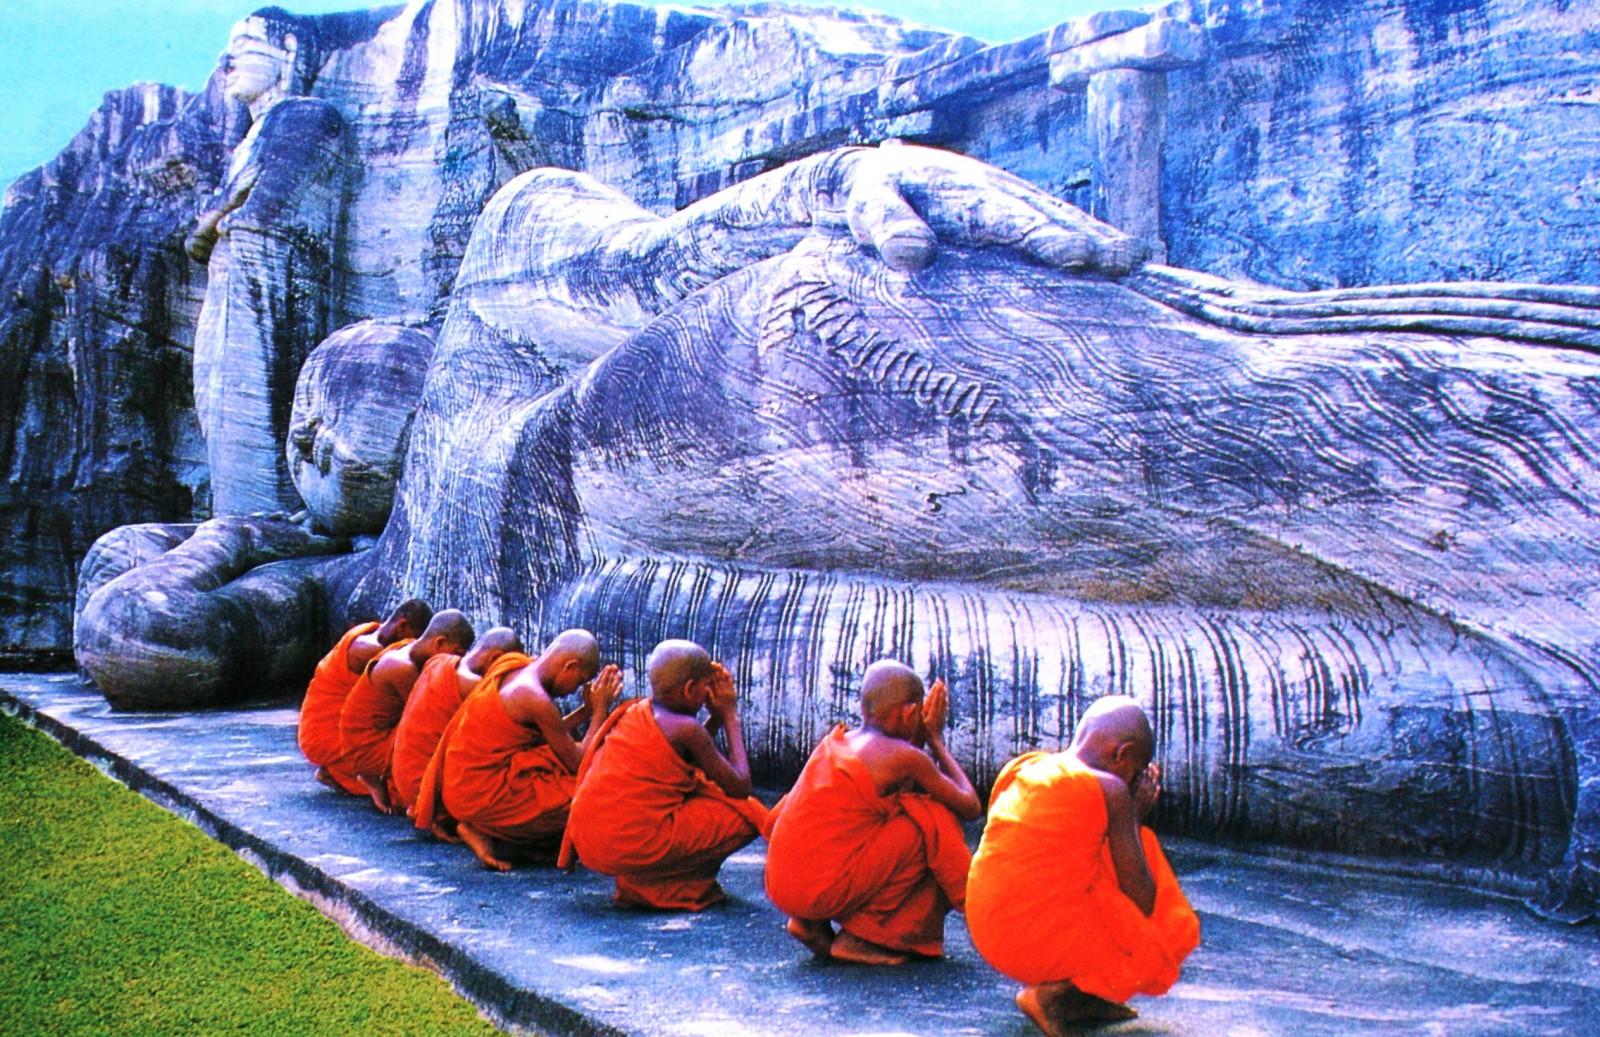 Dozvíte se zajímavosti o budhistickém náboženství